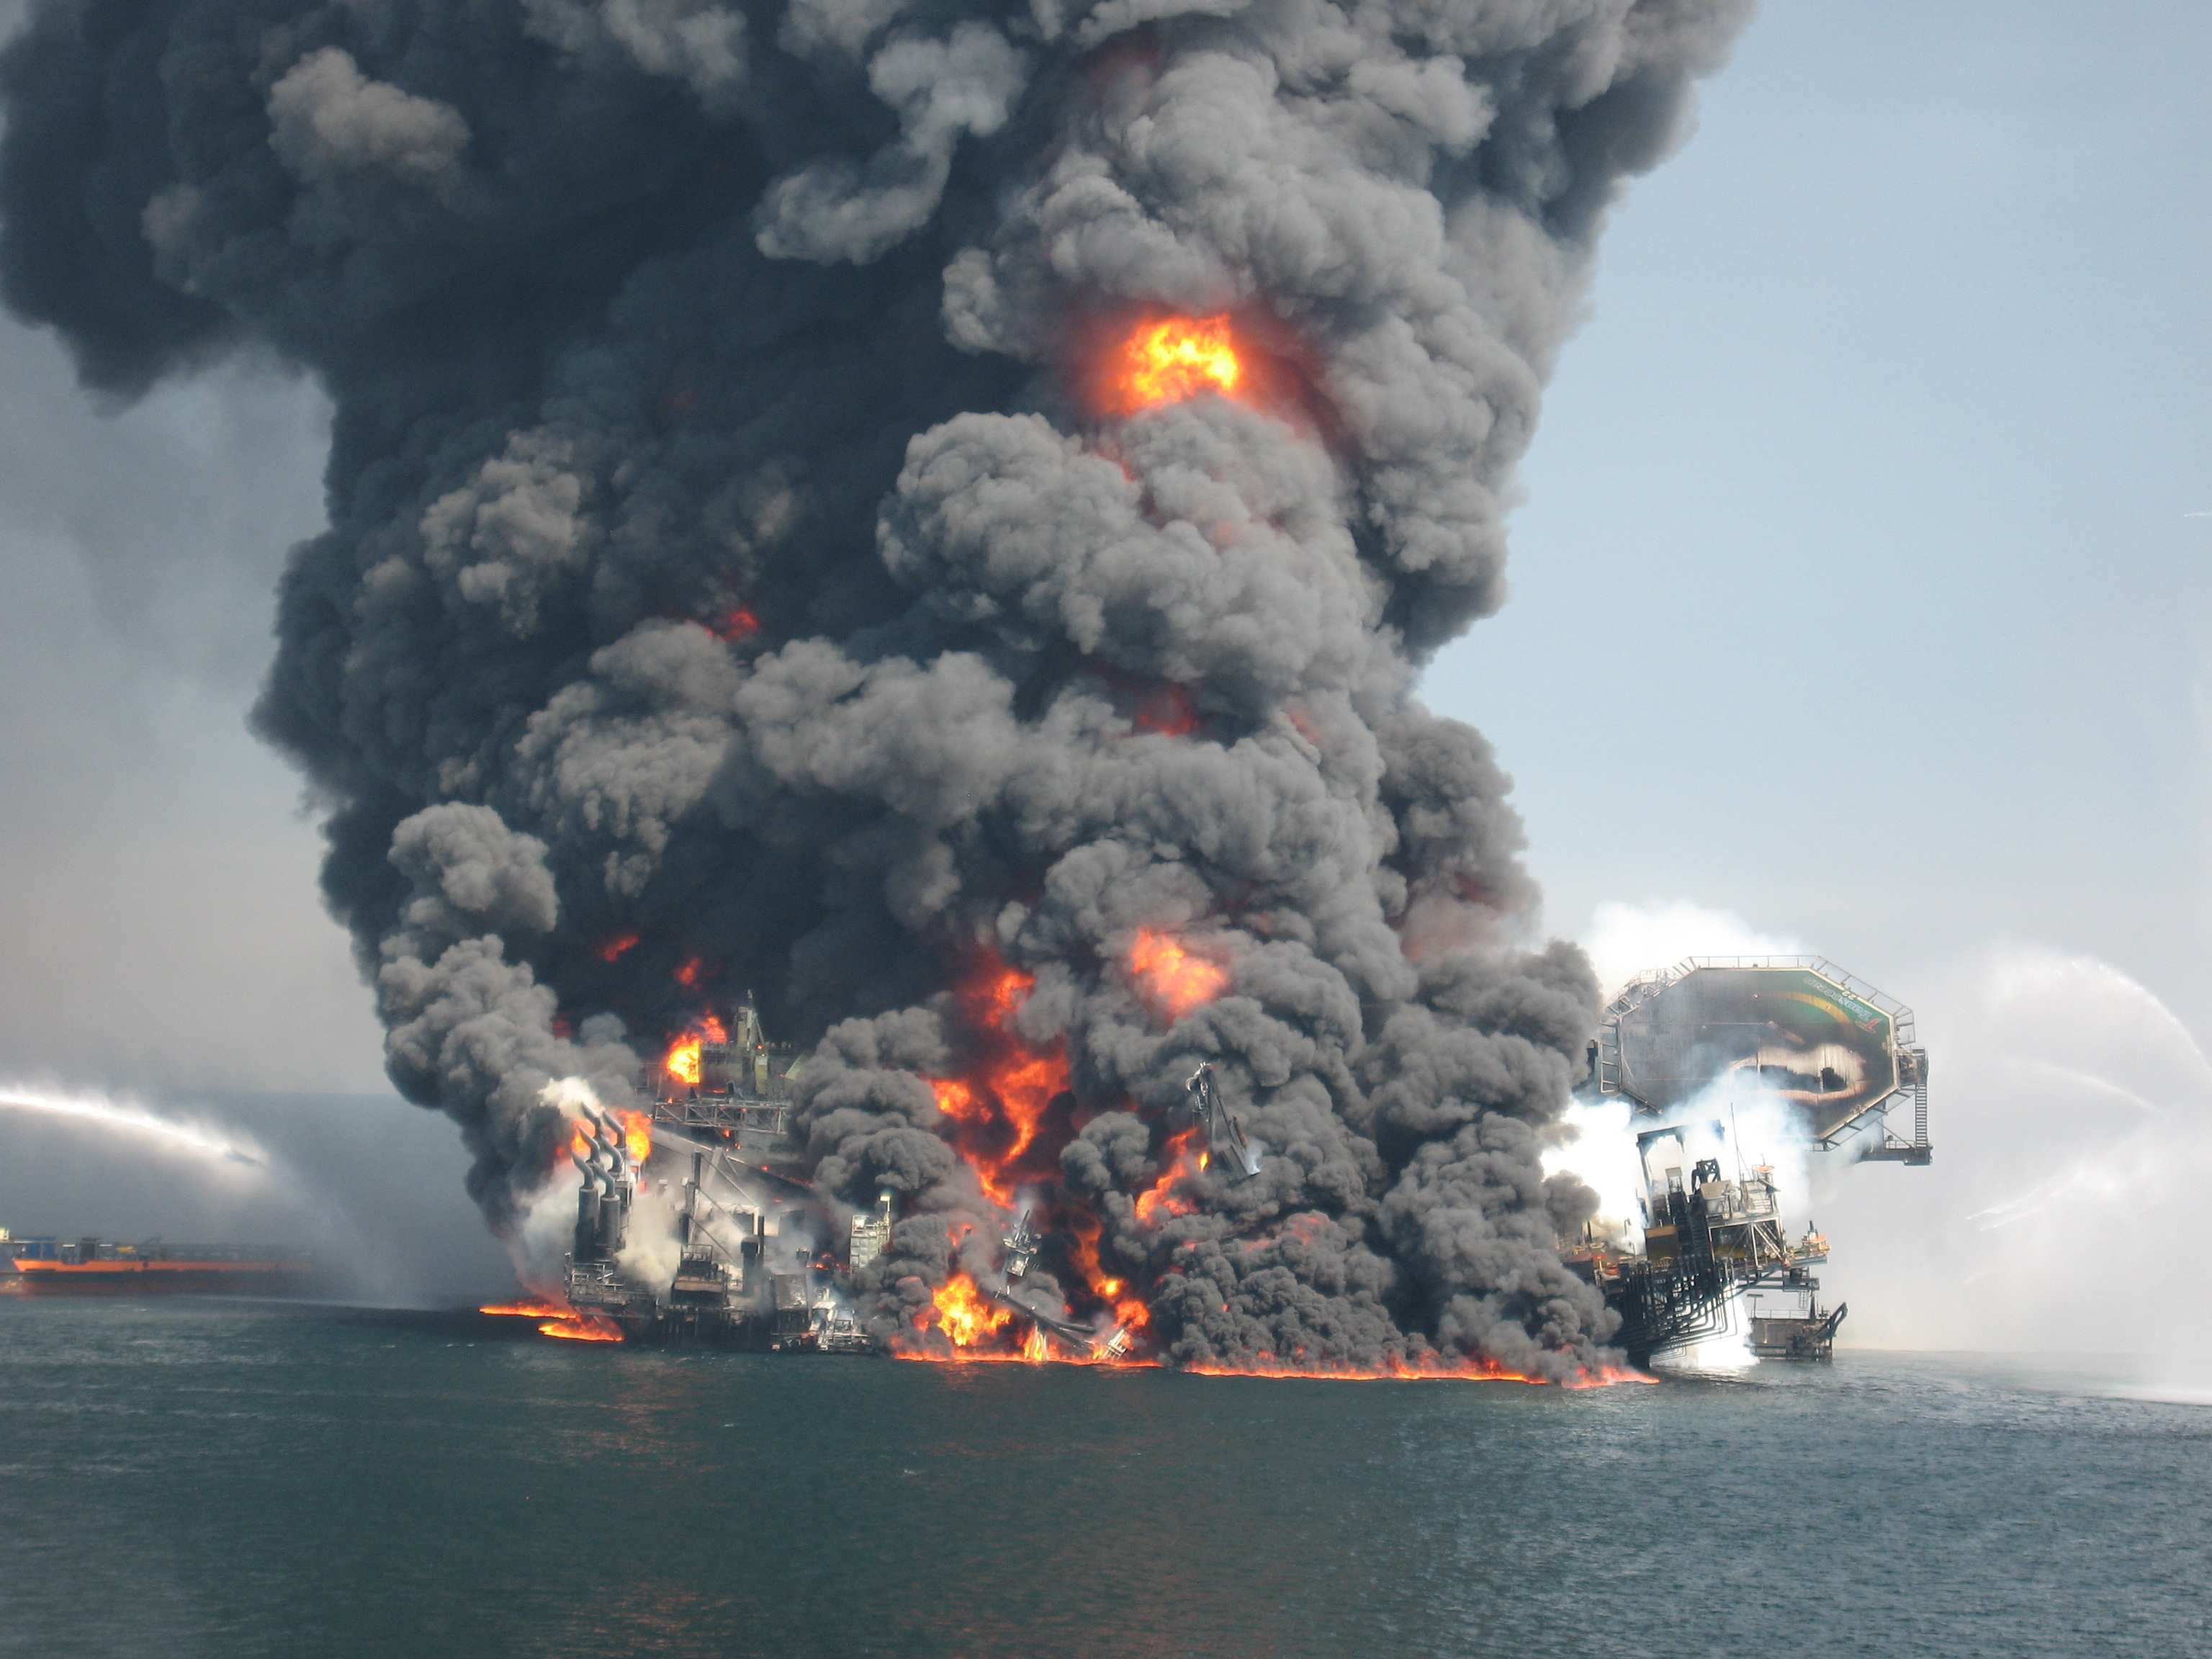 Крупные аварии в мире. Взрыв нефтяной платформы Deepwater Horizon в мексиканском заливе. Взрыв нефтяной платформы Deepwater Horizon - 20 апреля 2010 года. Авария на платформе Deepwater Horizon 20 апреля 2010 года. Взрыв на нефтяной платформе в мексиканском заливе 2010.